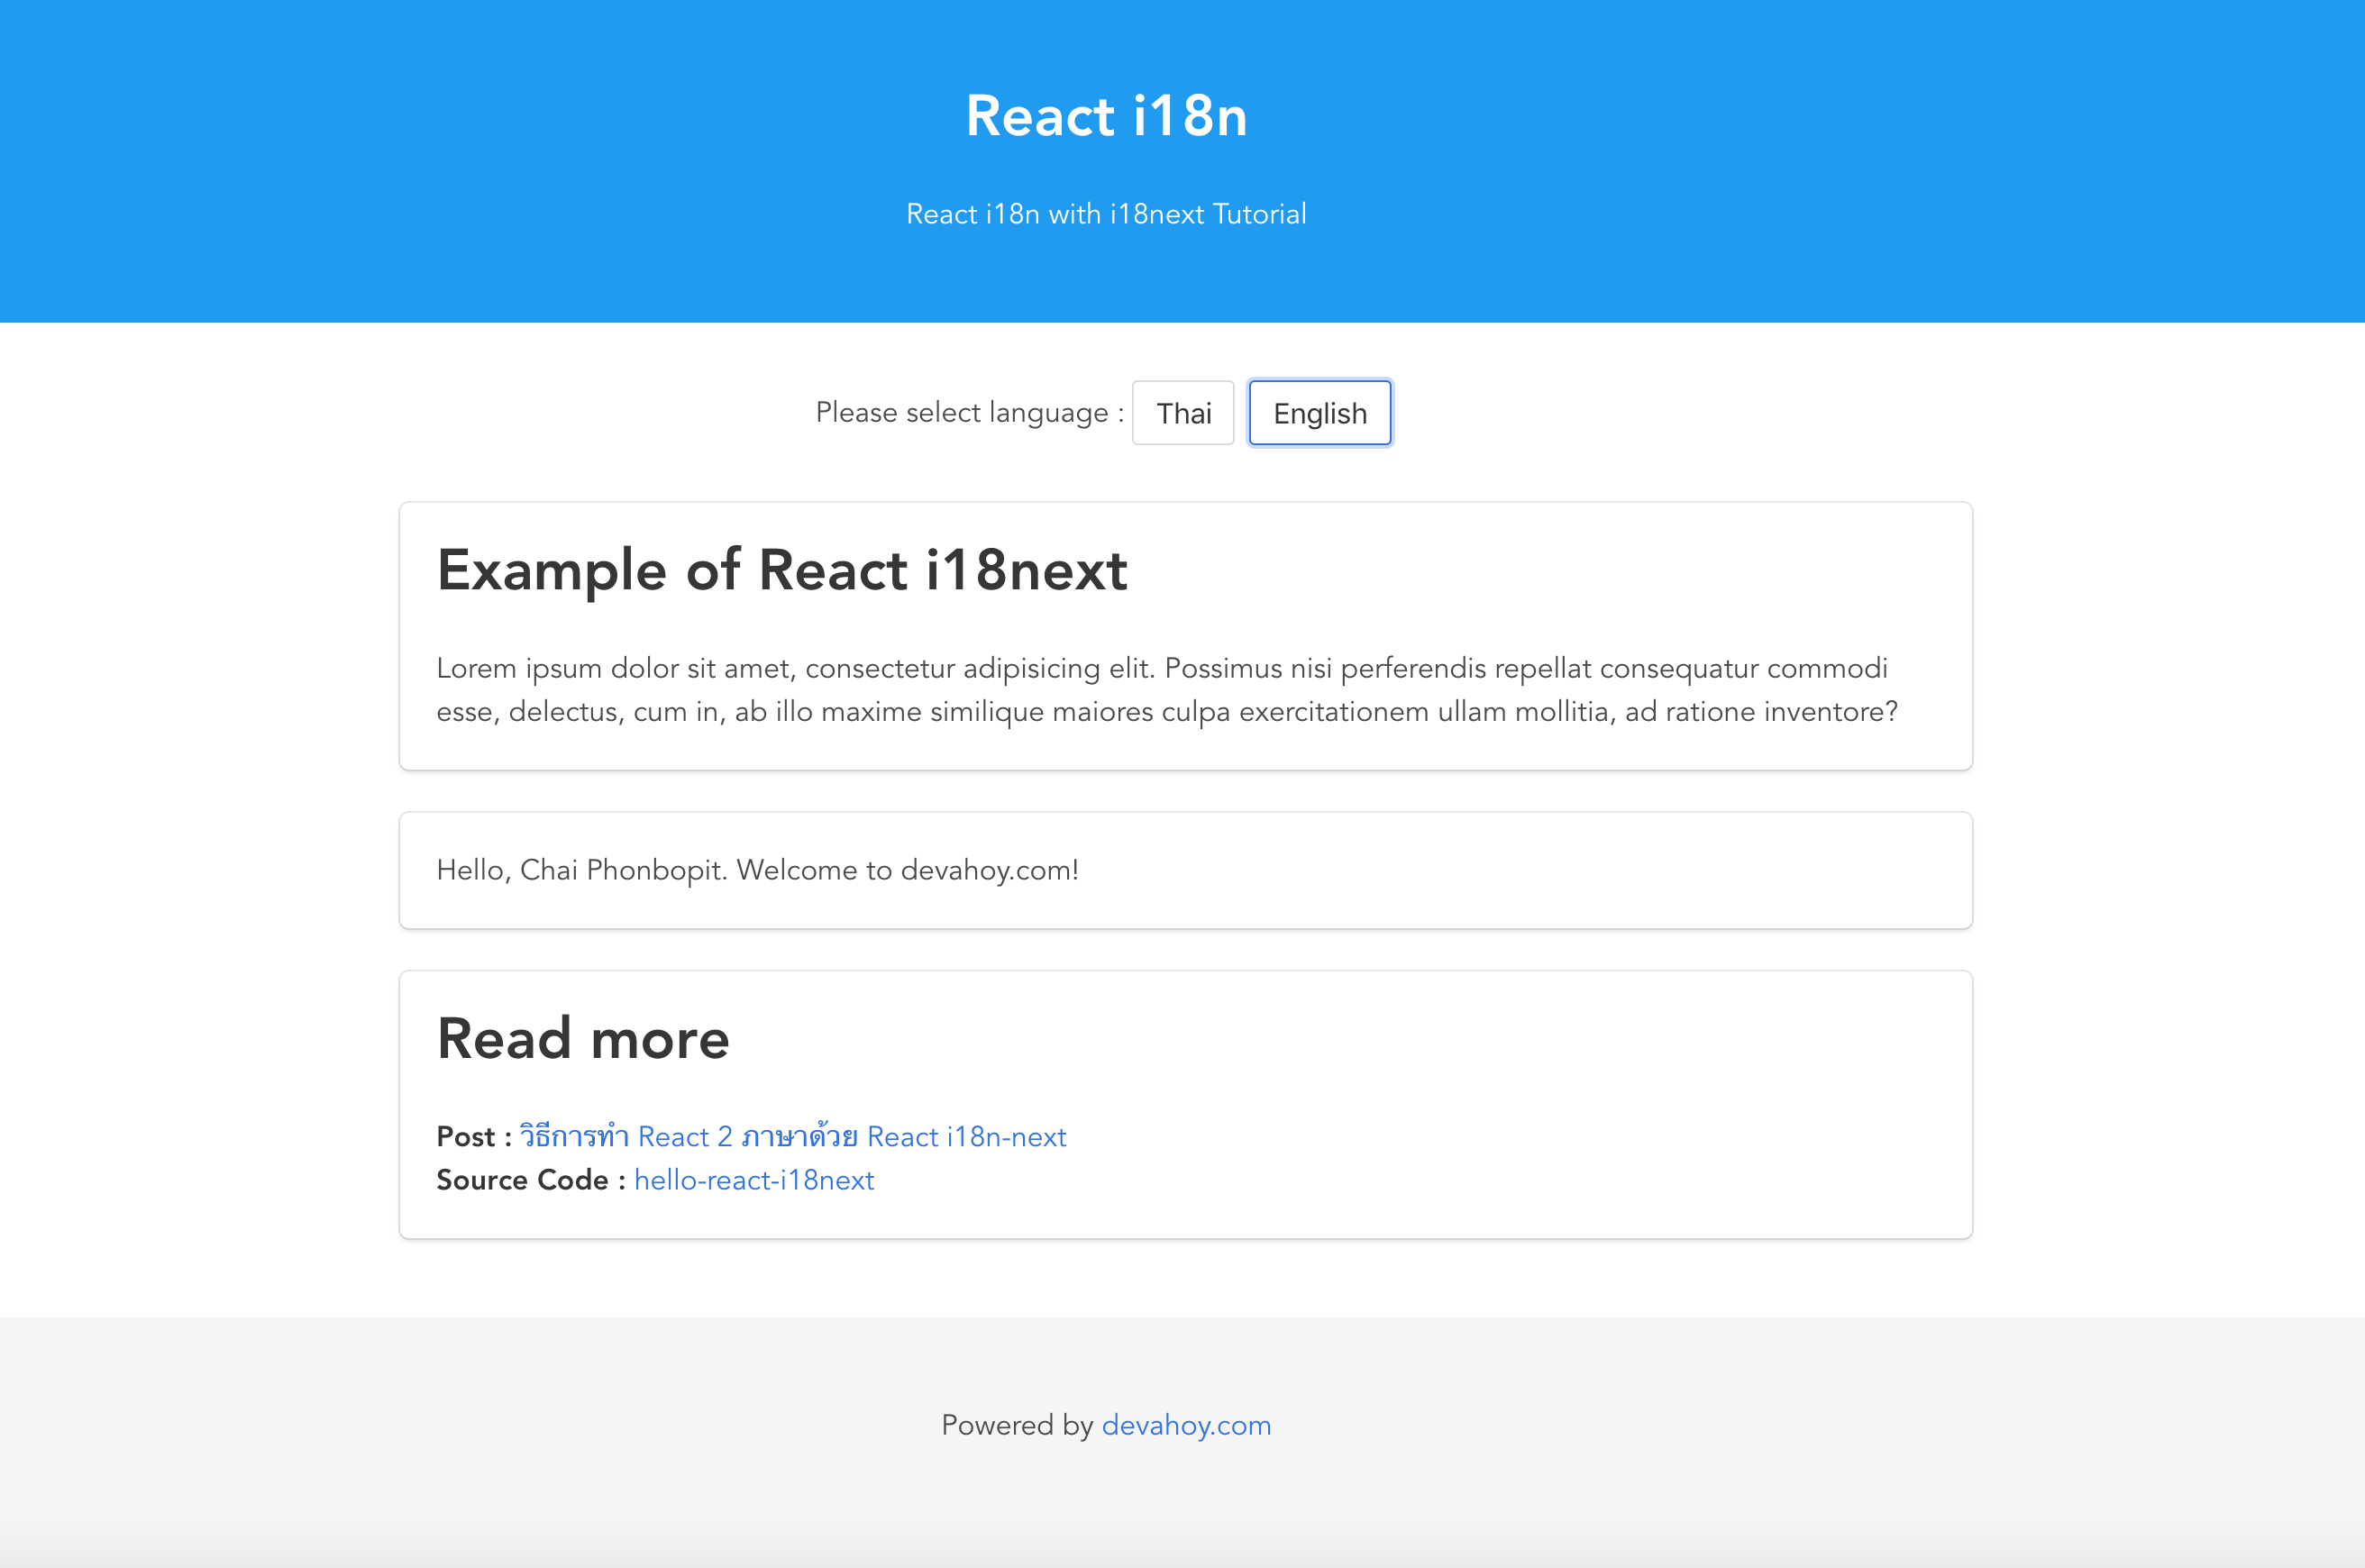 วิธีการทำ React 2 ภาษาด้วย React i18n-next